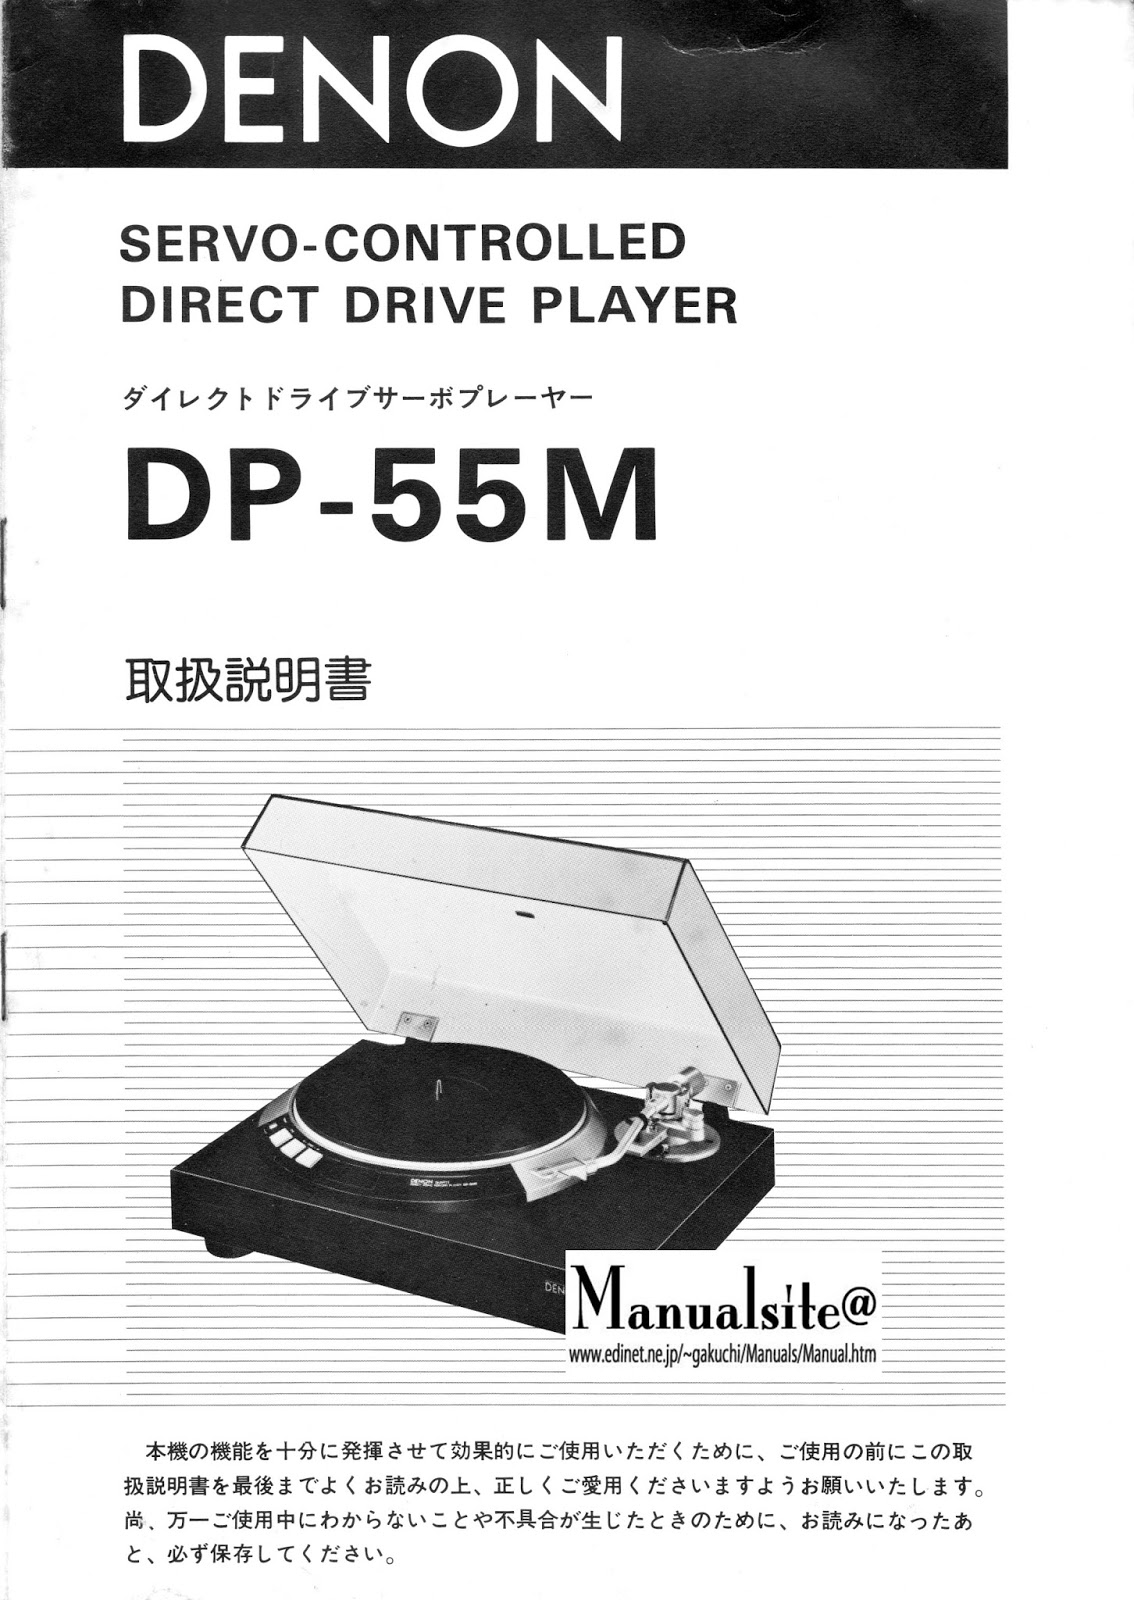 マニュアルサイト詳細館1号館: DP-55M